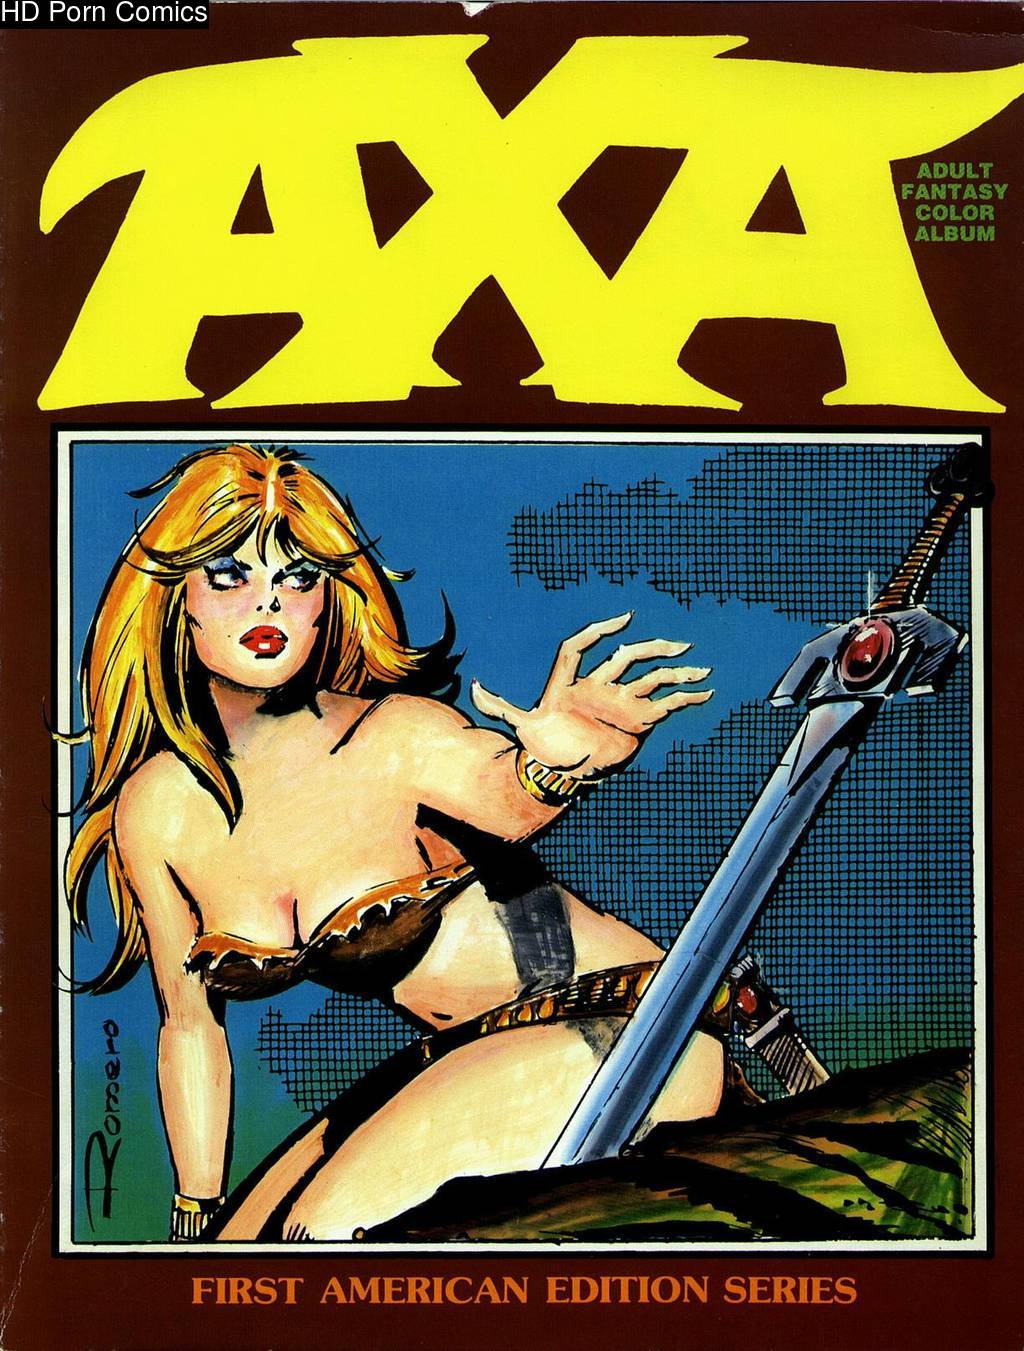 1024px x 1351px - Axa Adult Fantasy Color Album comic porn | HD Porn Comics